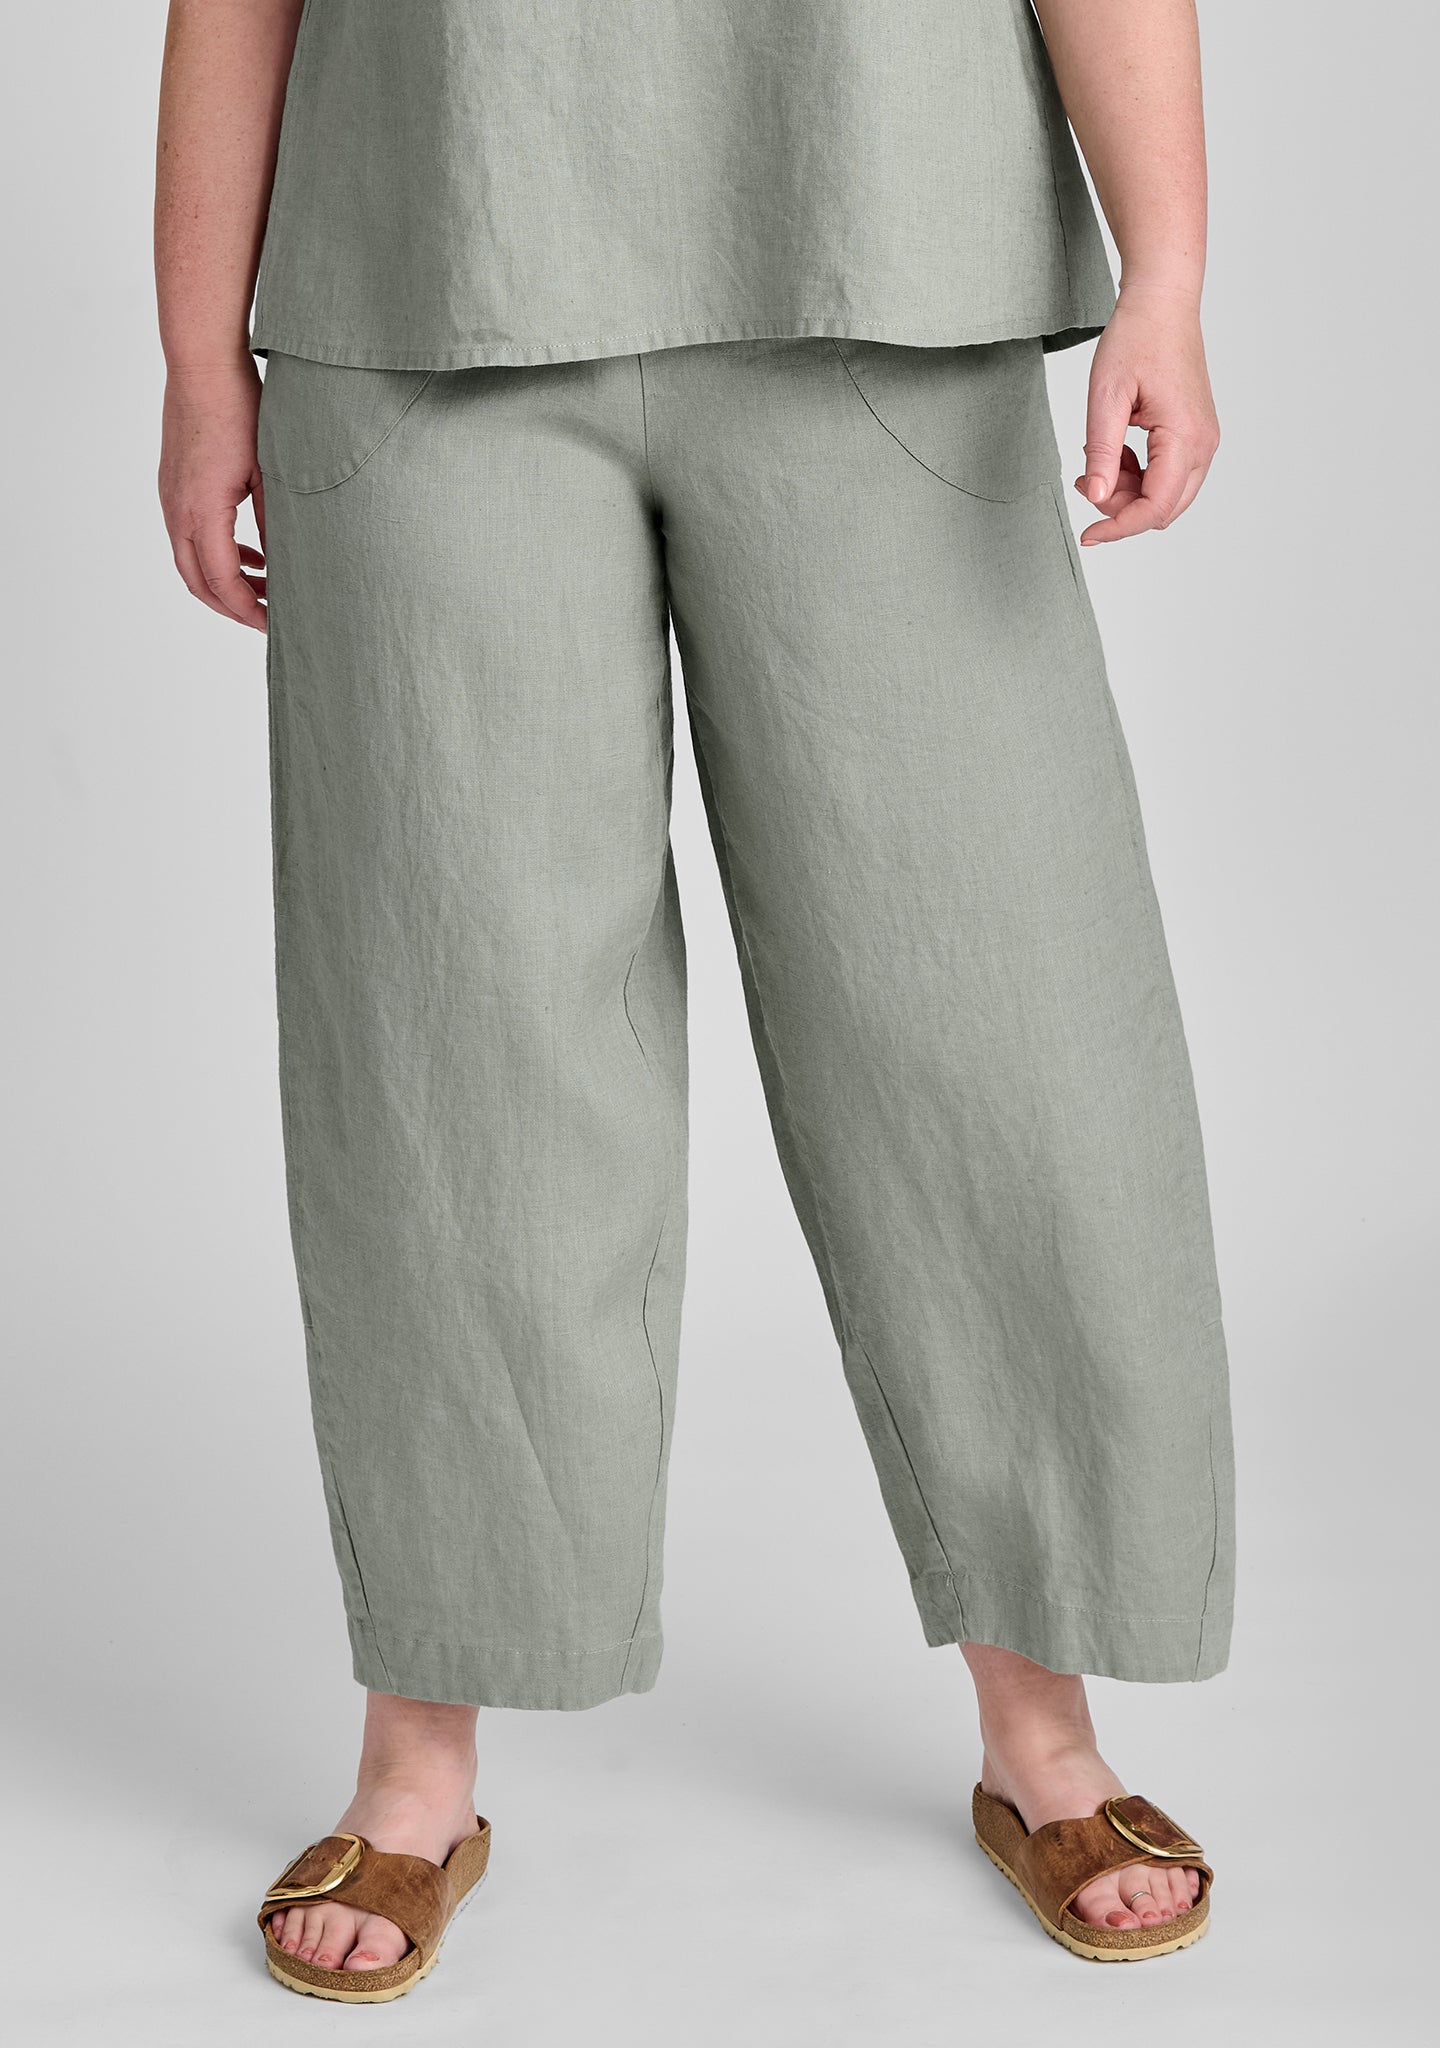 Shop Women's Italian Cotton Gauze Pants